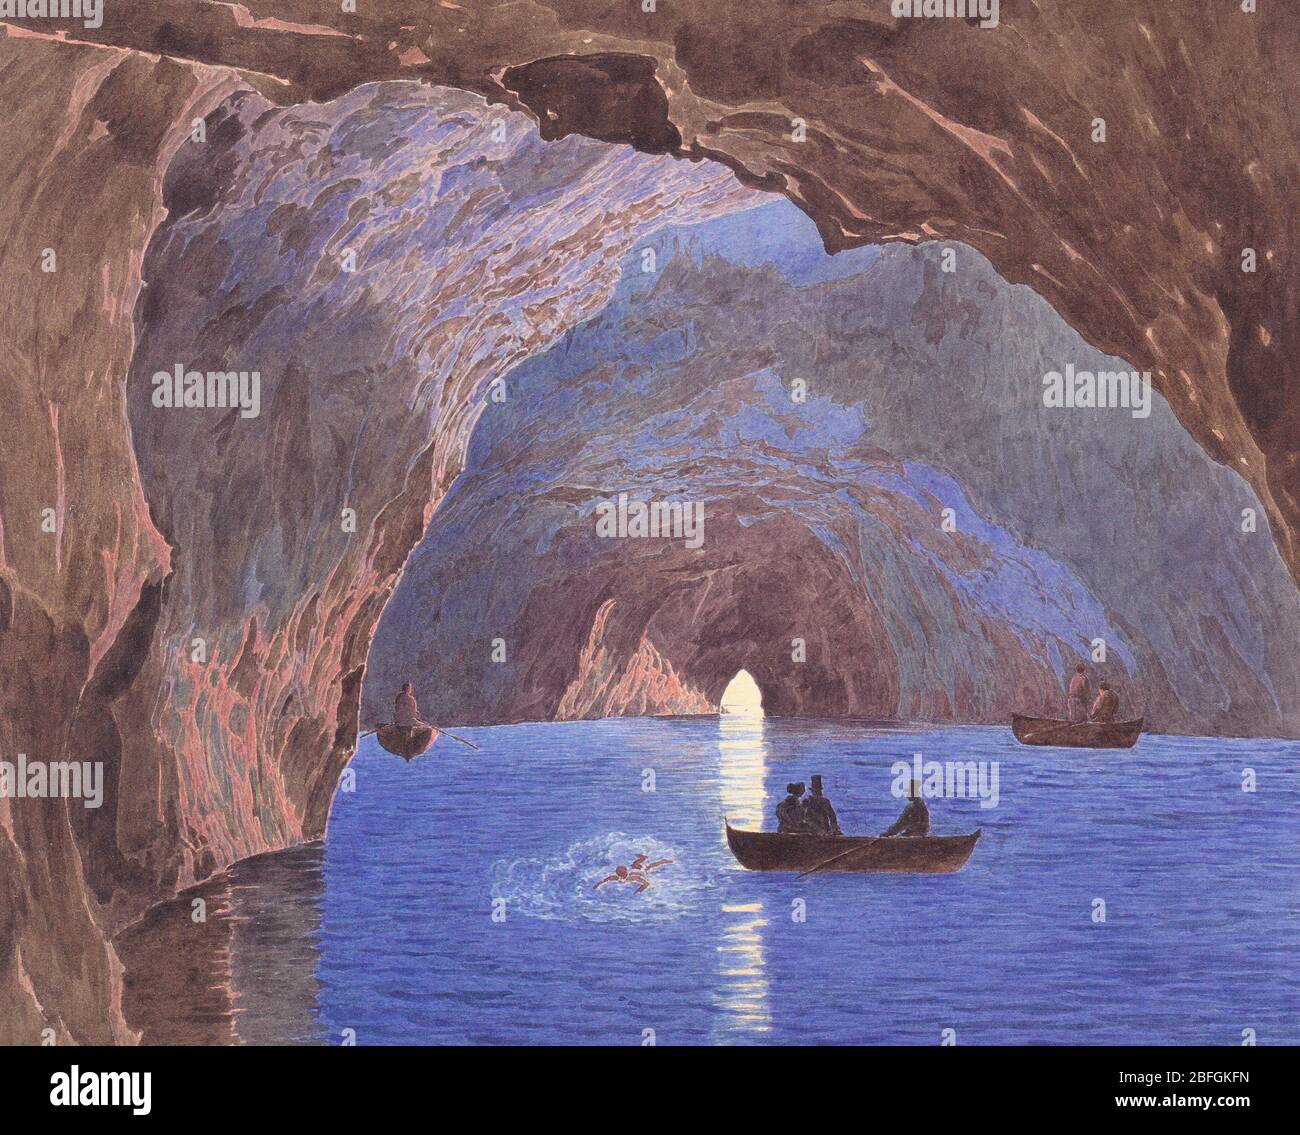 La Grotte bleue sur l'île de Capri - Jakob Alt, vers 1835 Banque D'Images